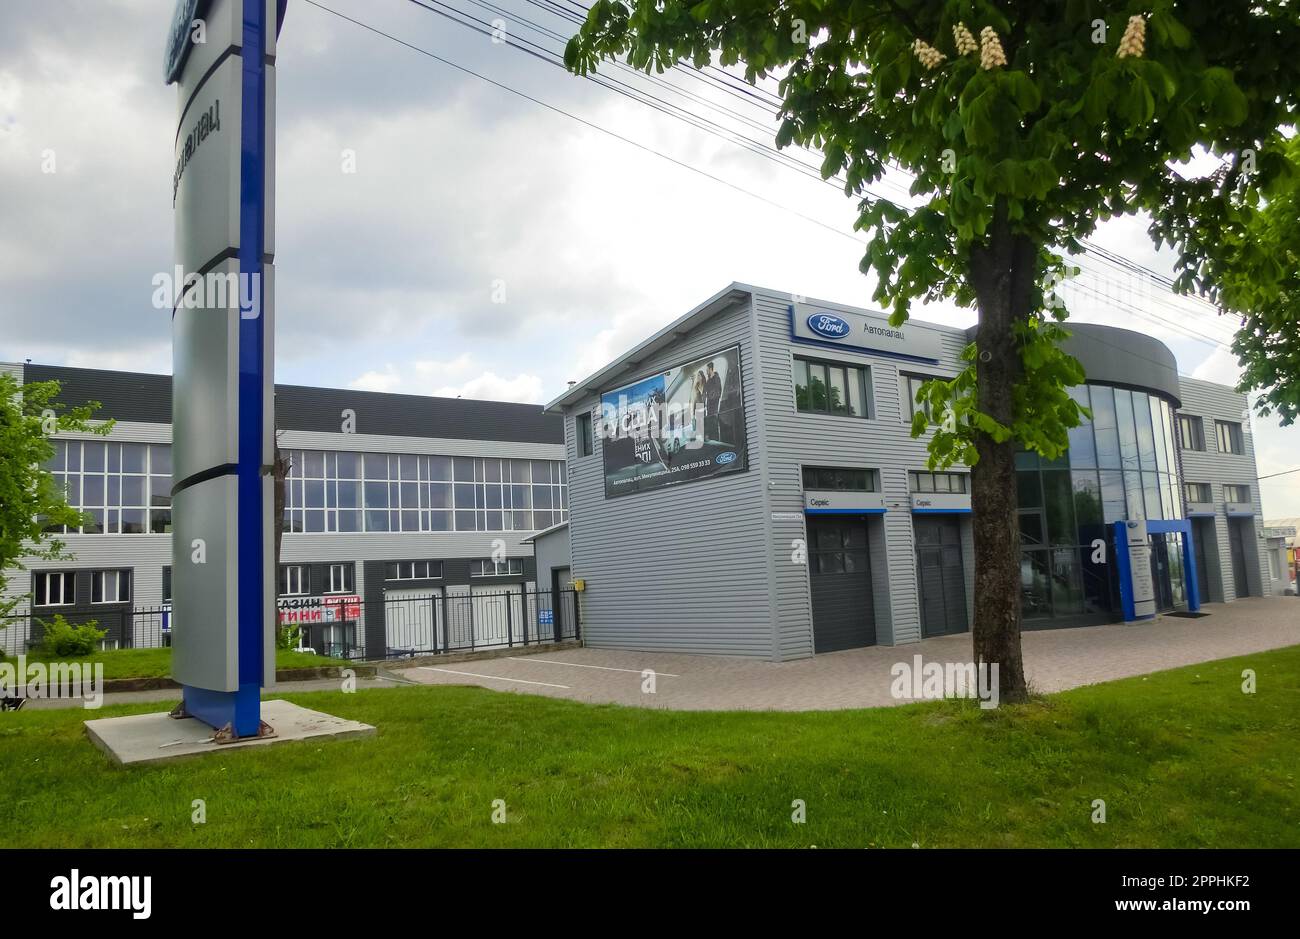 Ford Store à Ternopol, Ukraine. Ford Motor Company est une multinationale américaine fondée par Henry Ford en 1903. Banque D'Images